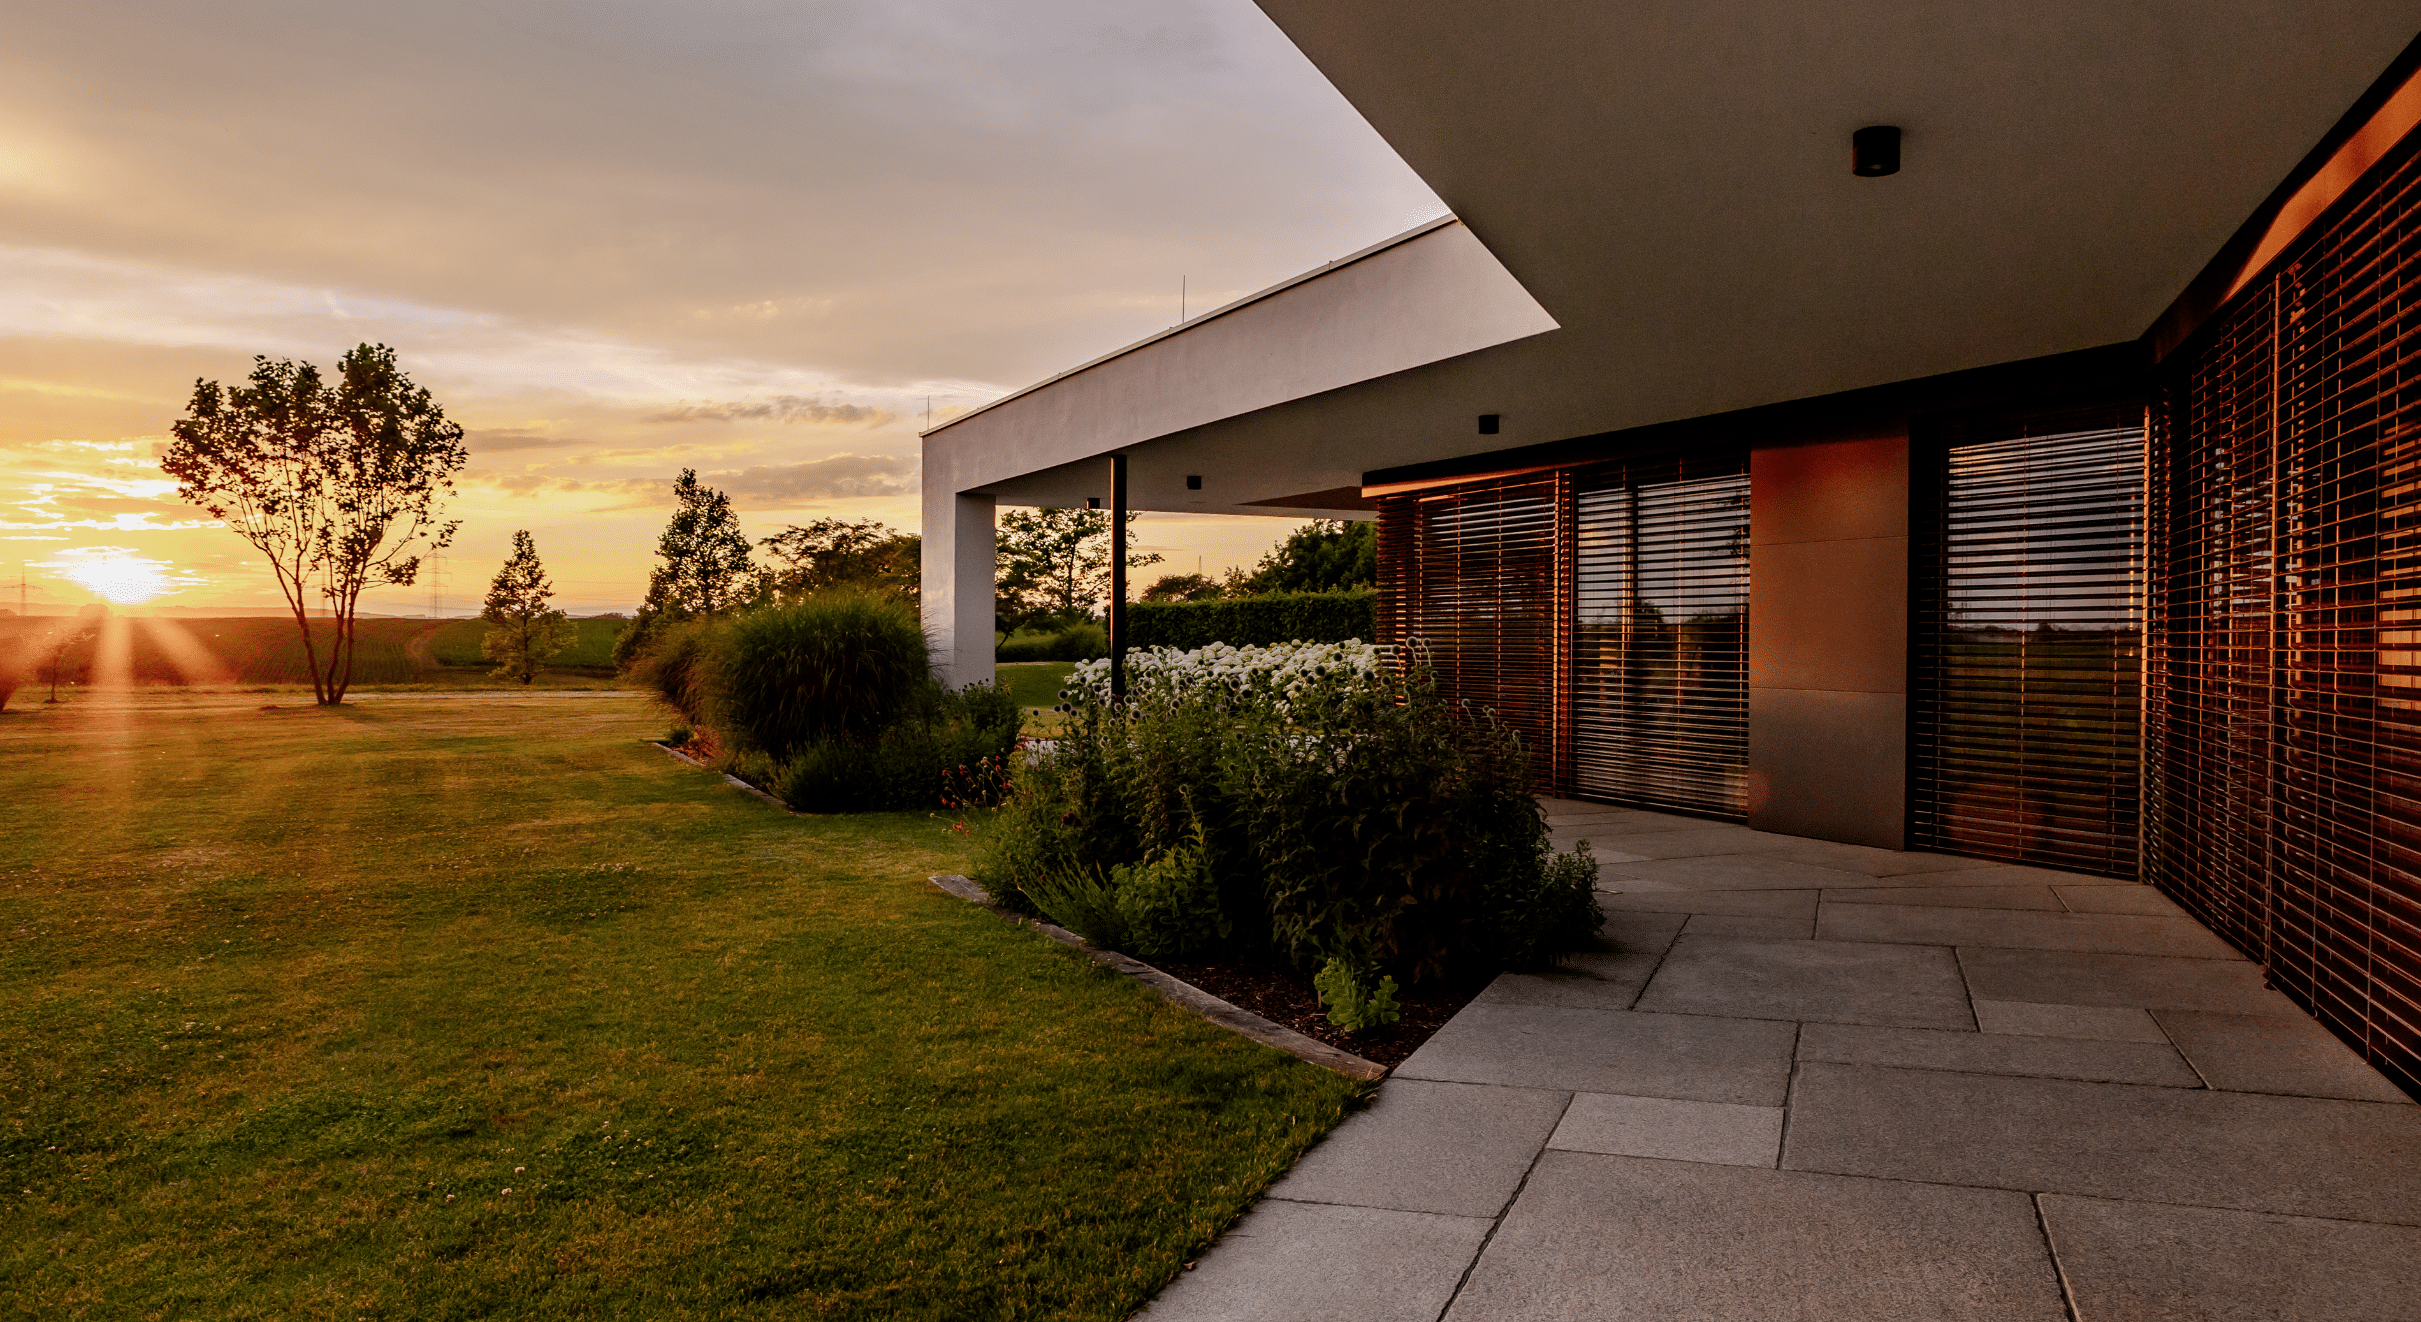 Newo Sonnen- und Insektenschutz zeigt ein modernes Einfamilienhaus mit großen Glasfronten auf denen Rollläden als Sonnenschutz angebracht wurden.